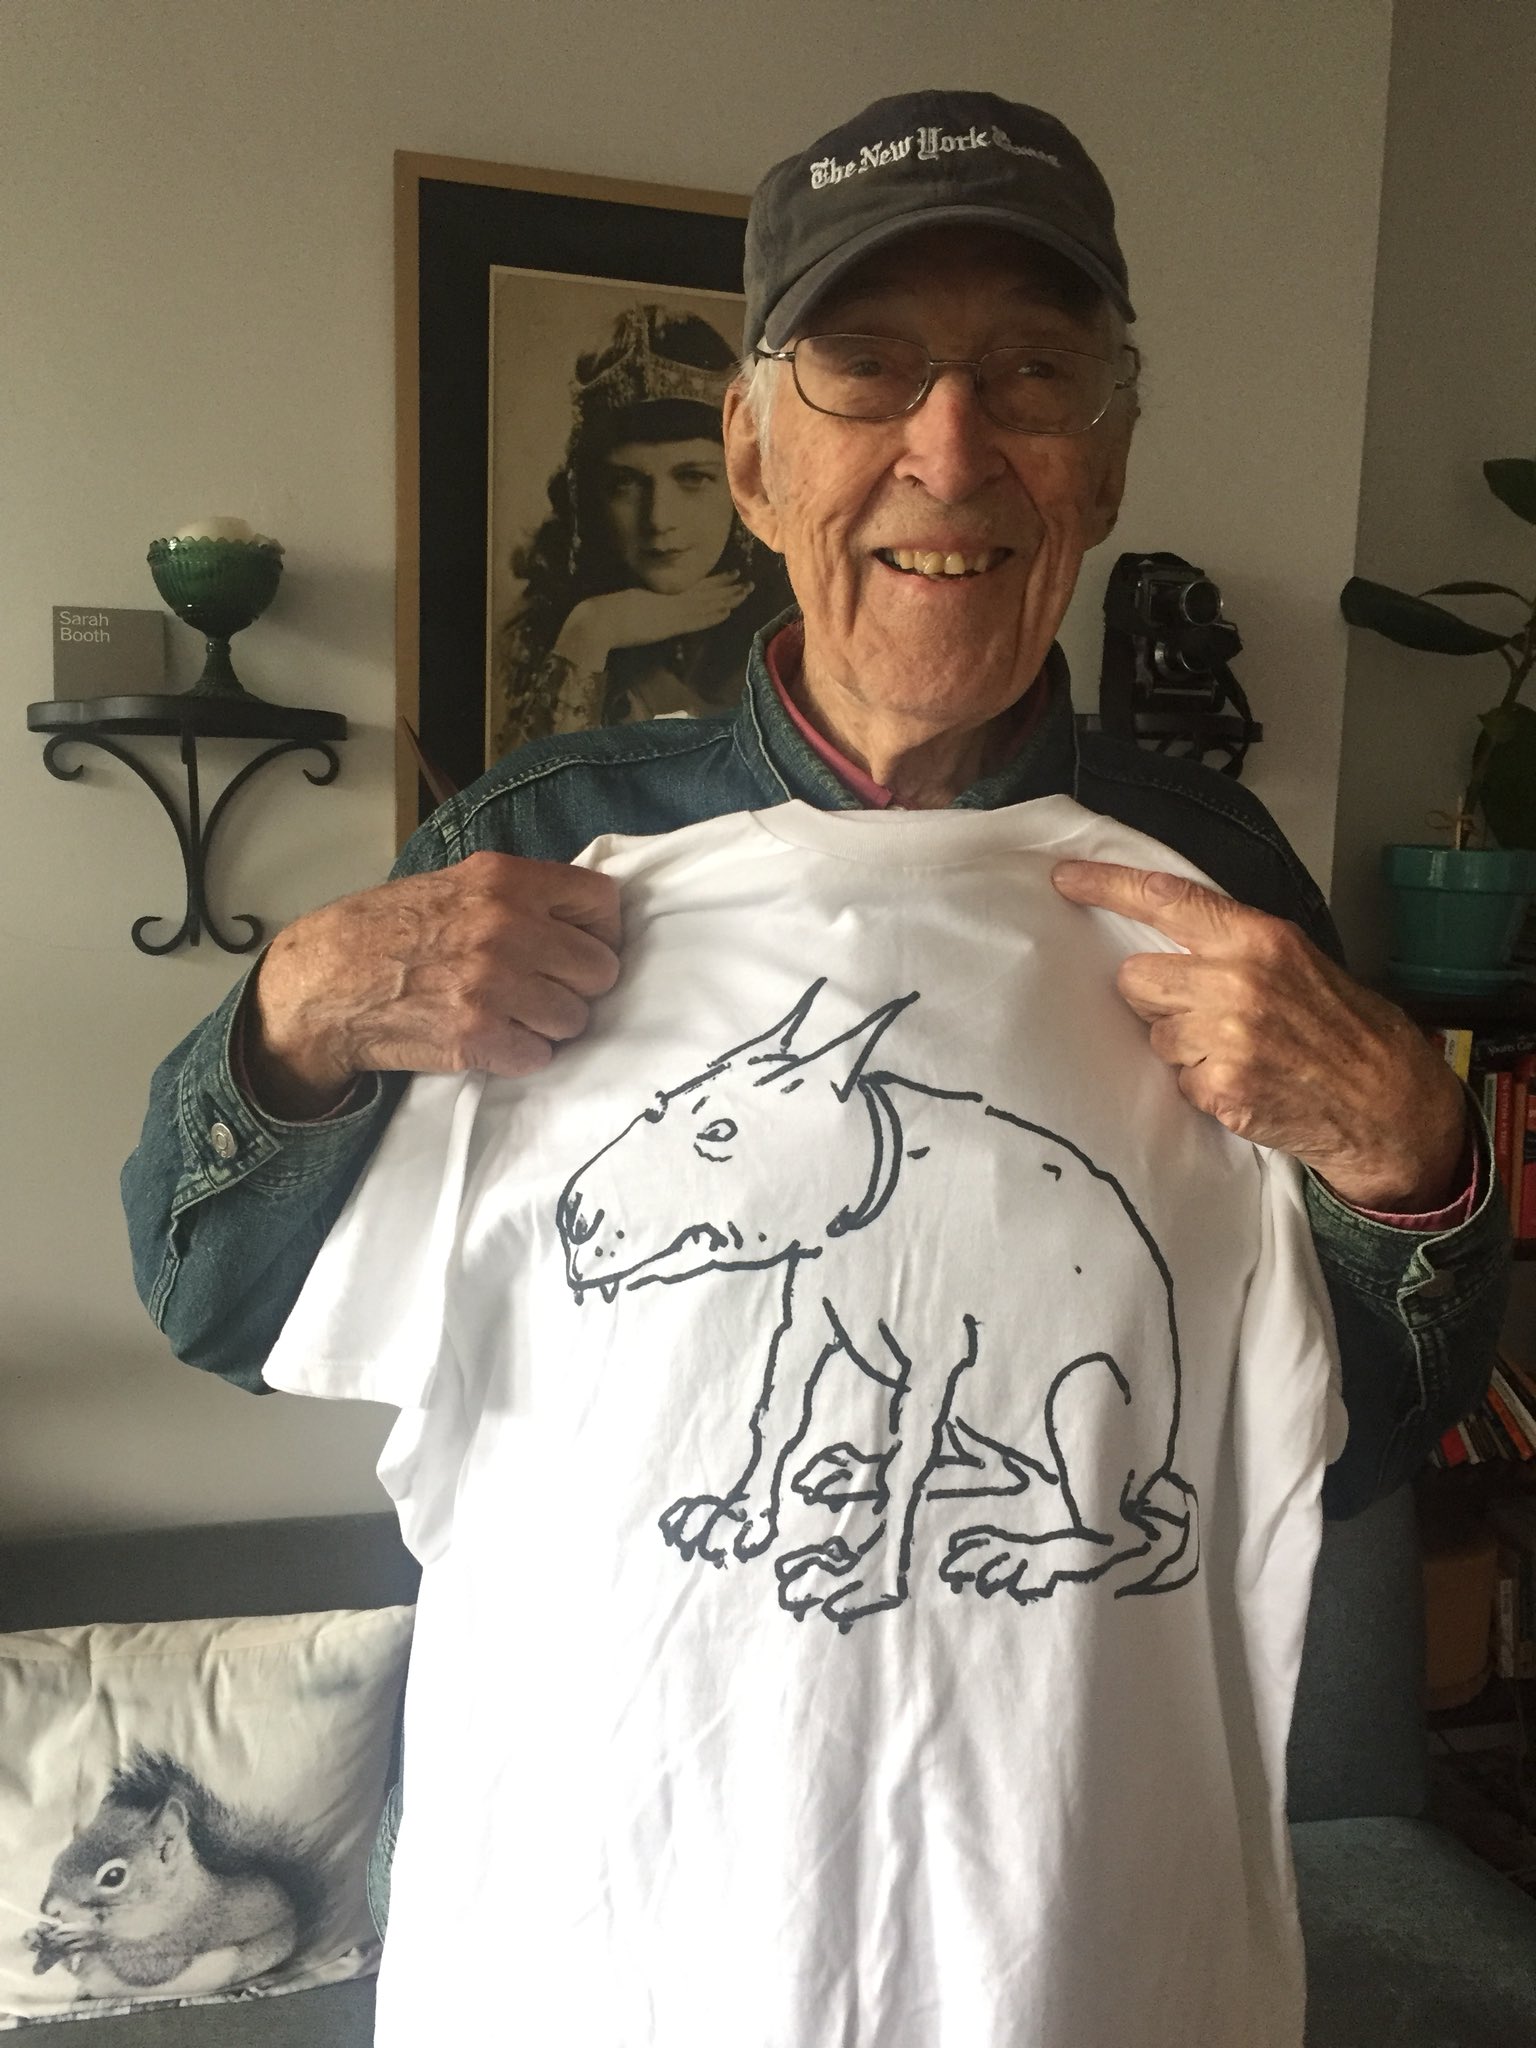 George Booth  con una camisa con su conocido dibujo perruno 